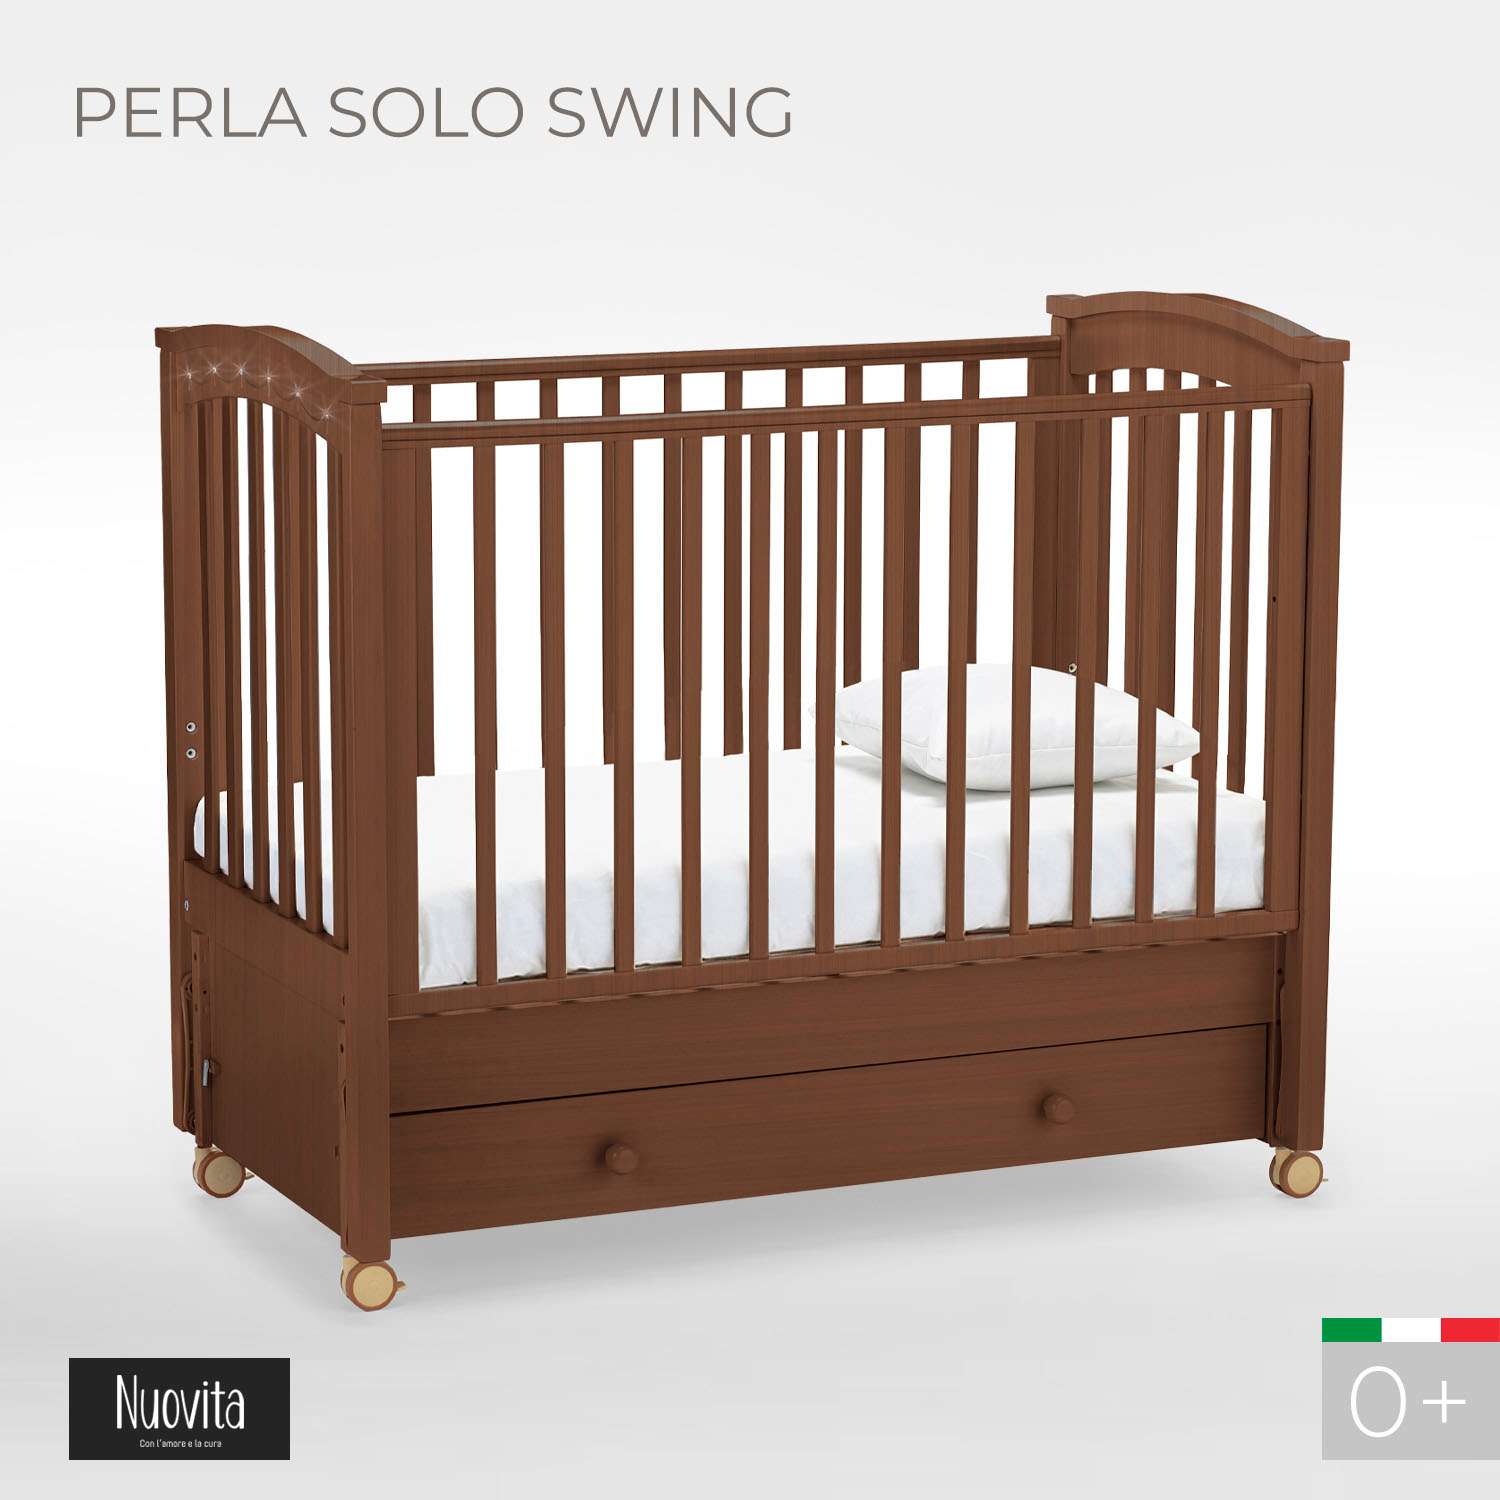 Детская кроватка Nuovita Perla Solo Swing прямоугольная, продольный маятник (темный орех) - фото 2